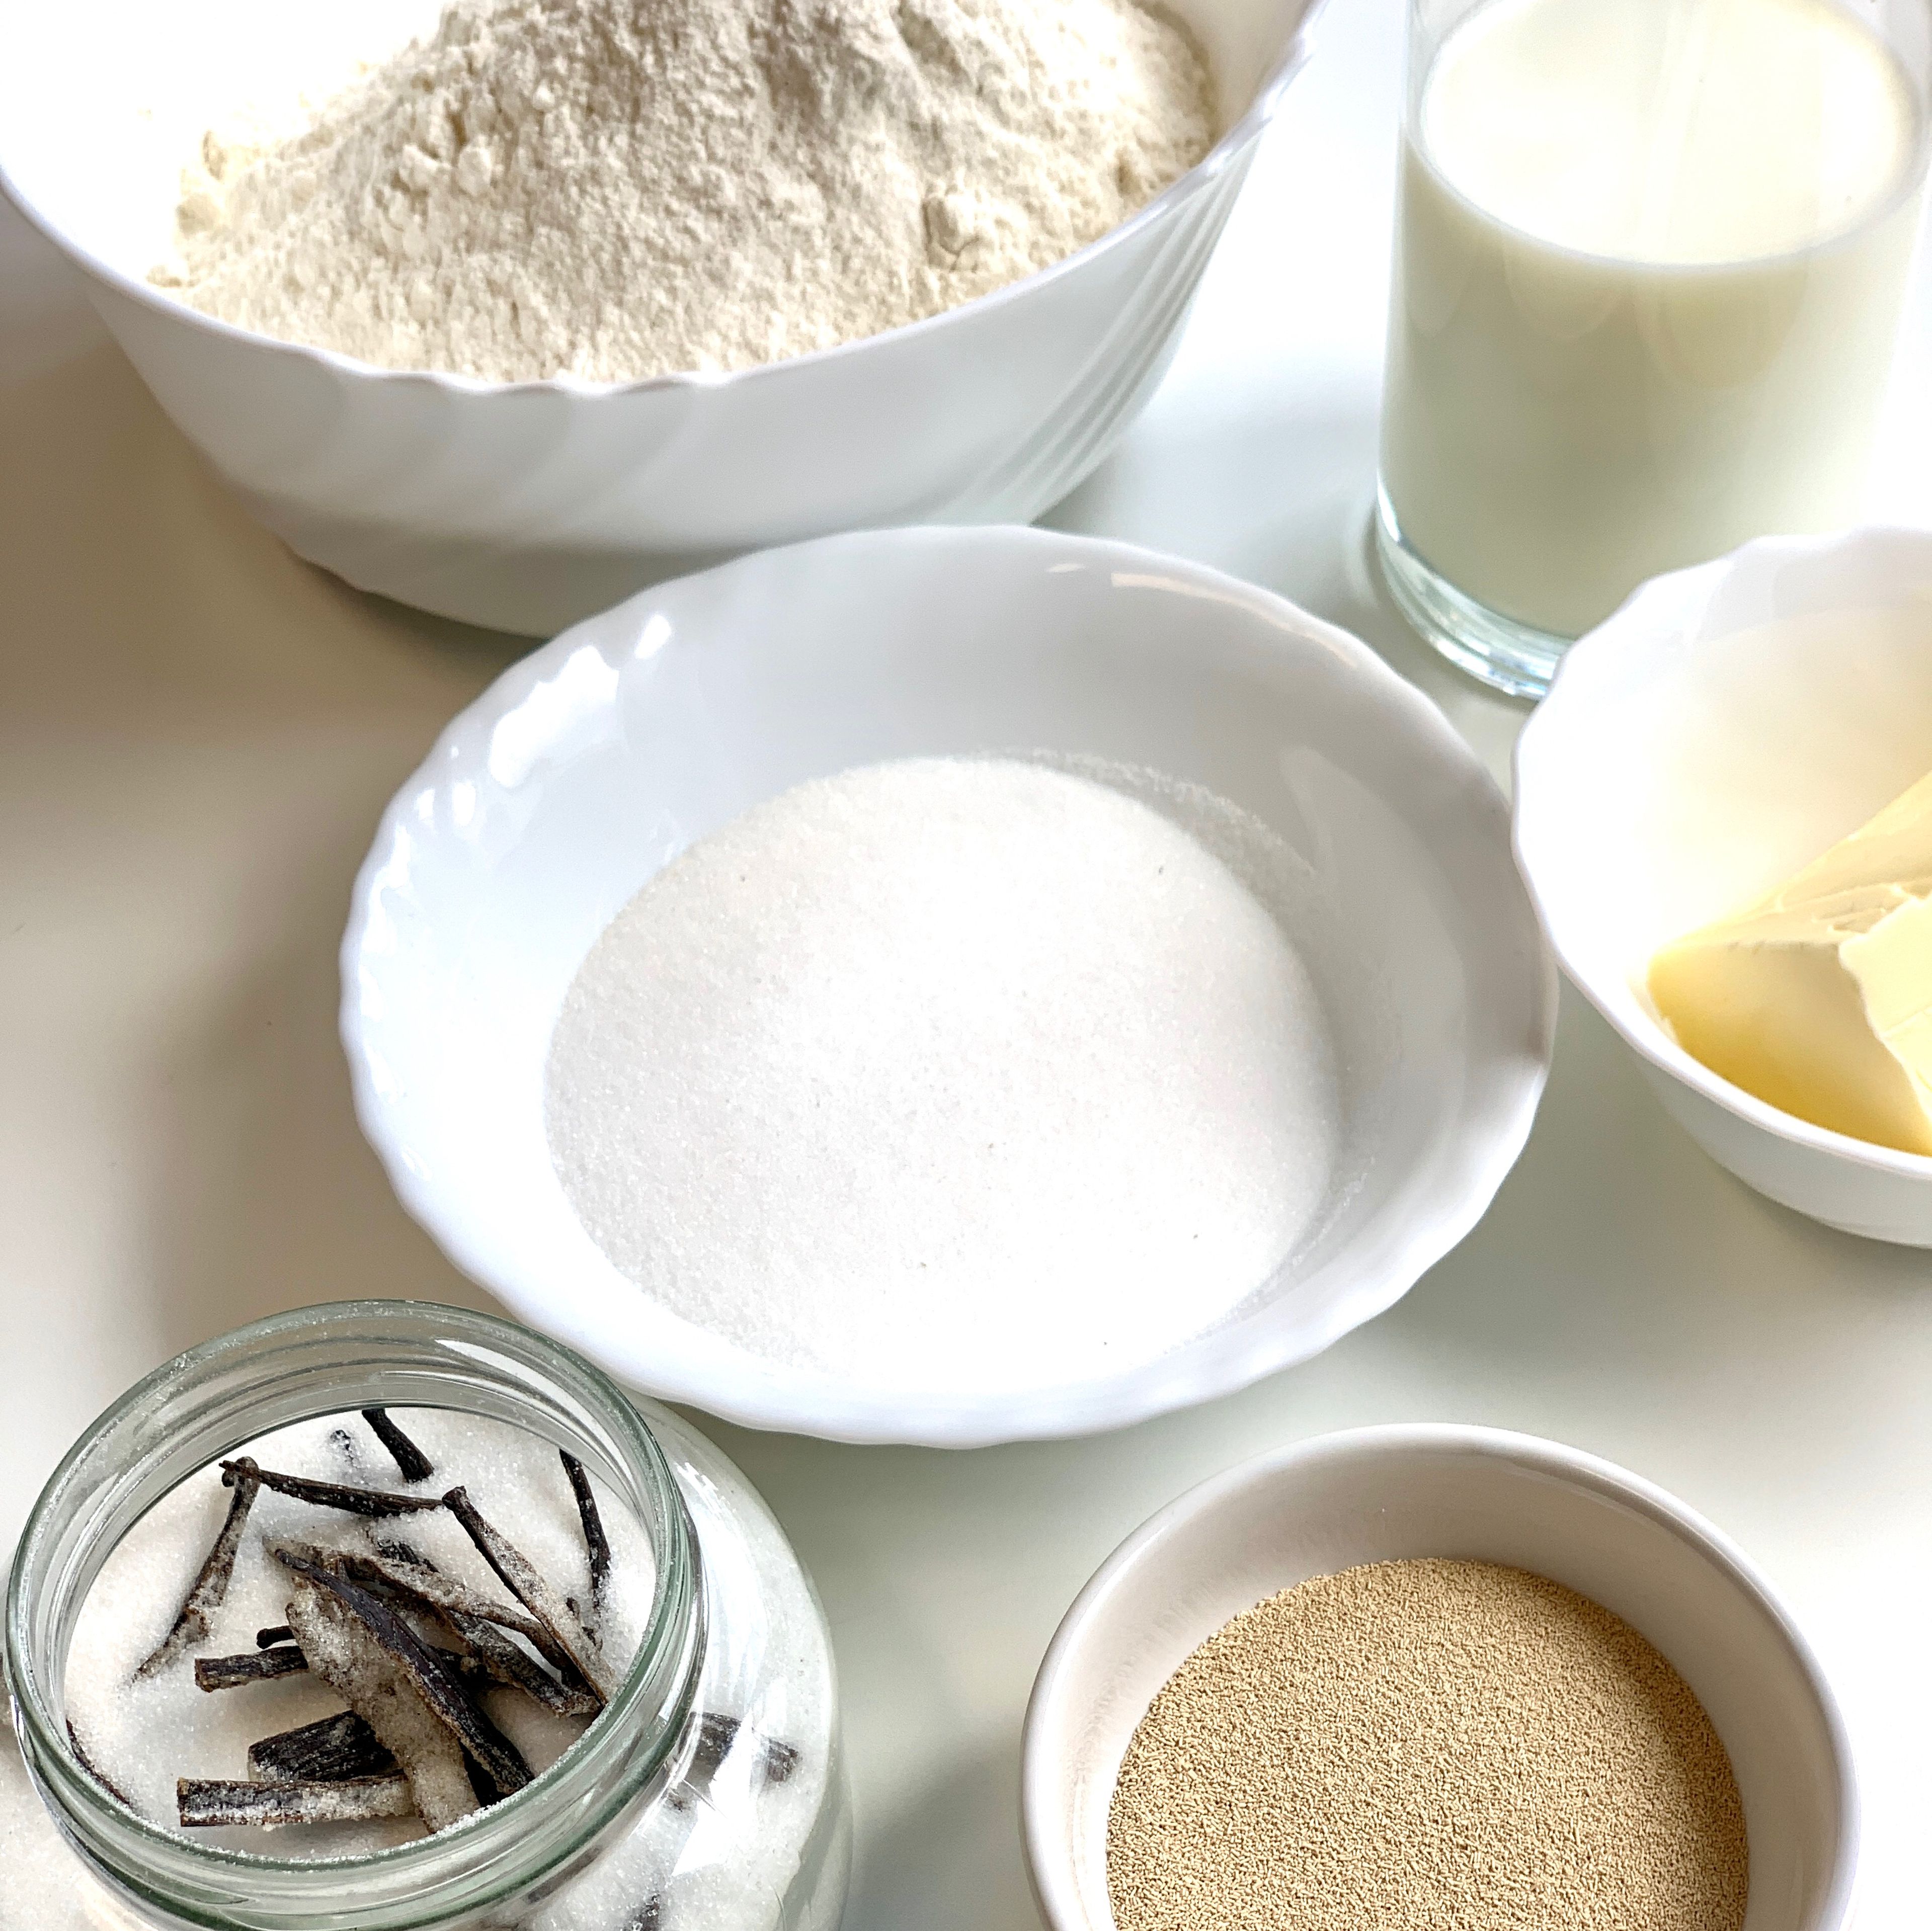 Ein Teelöffel Zucker mit der Trockenhefe und dem lauwarmen Wasser verrühren und 10 Minuten stehen lassen.￼￼ Das Mehl mit dem restlichen Zucker, dem Vanillezucker und dem Salz mischen.￼ Nun die Hefemischung dazugeben und alles gut durchkneten￼￼.